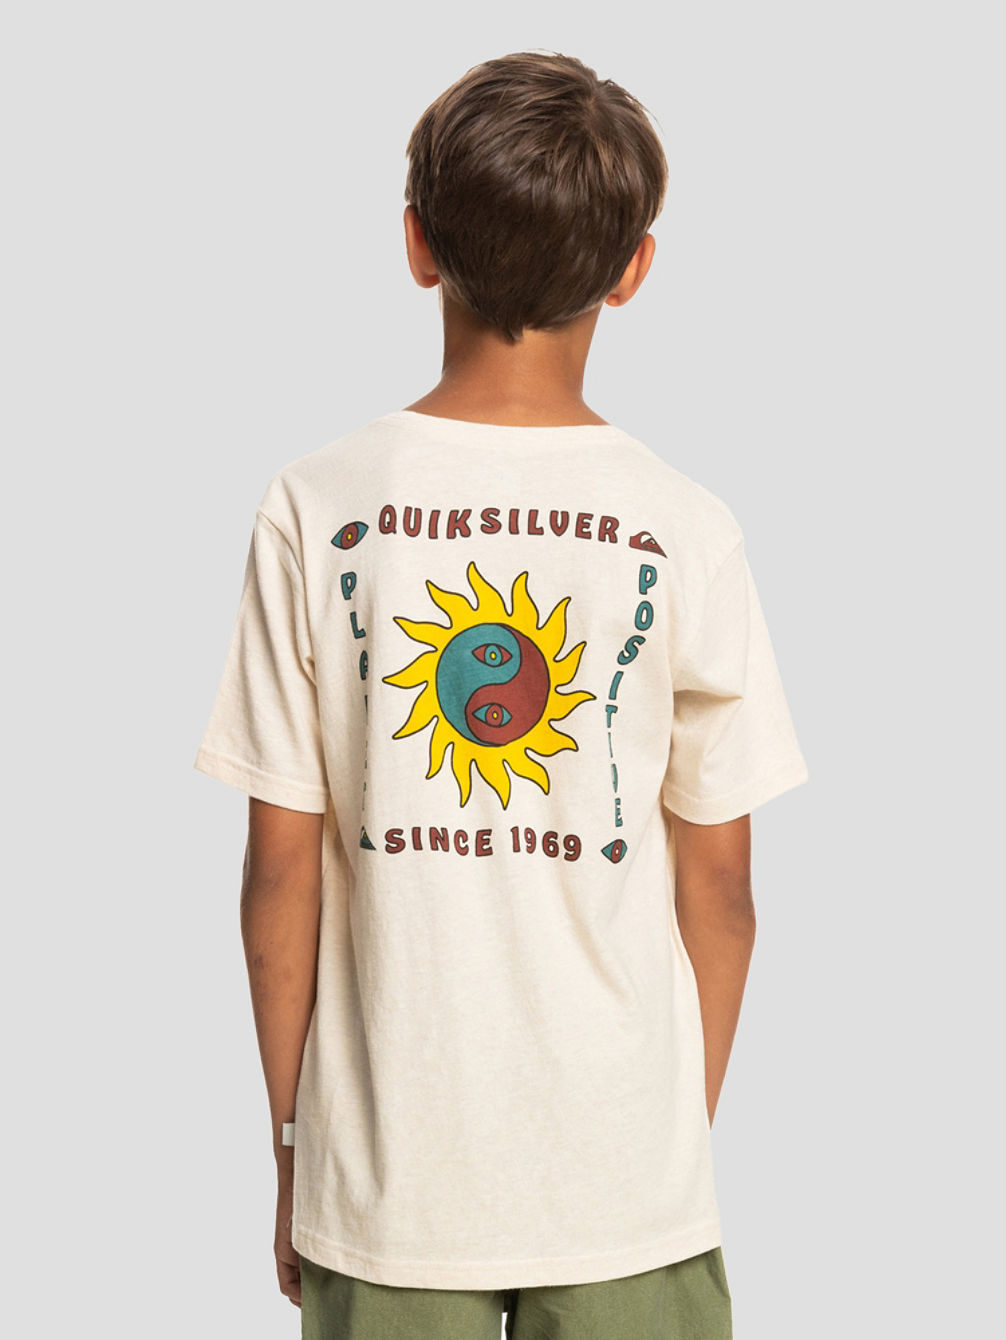 Planet Positive Camiseta